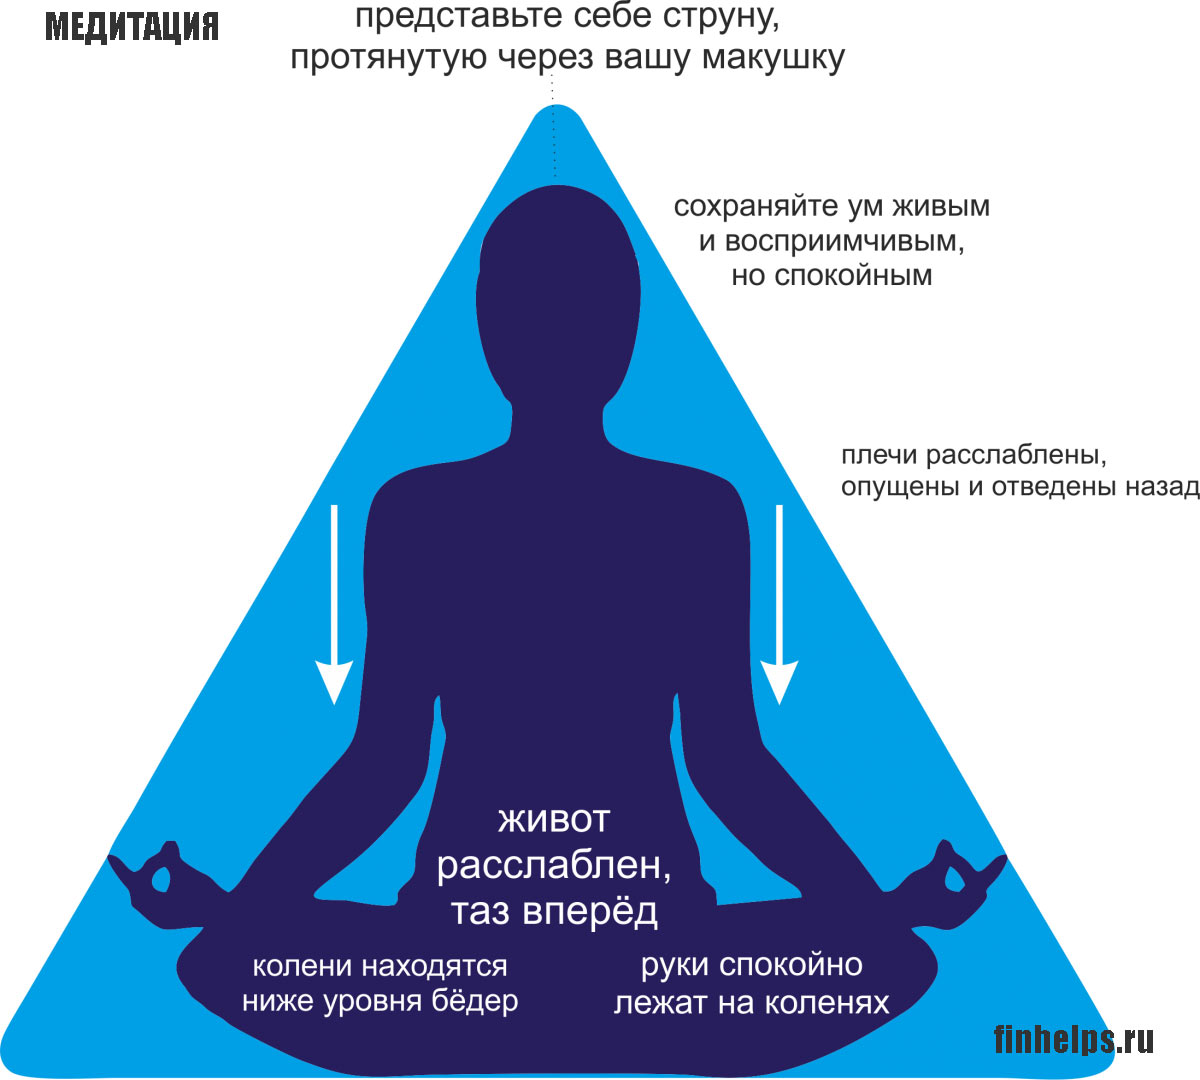 Правила медитации. Правильная медитация. Как правильно медитировать. Формы и методы медитации. Медитация для начинающих.